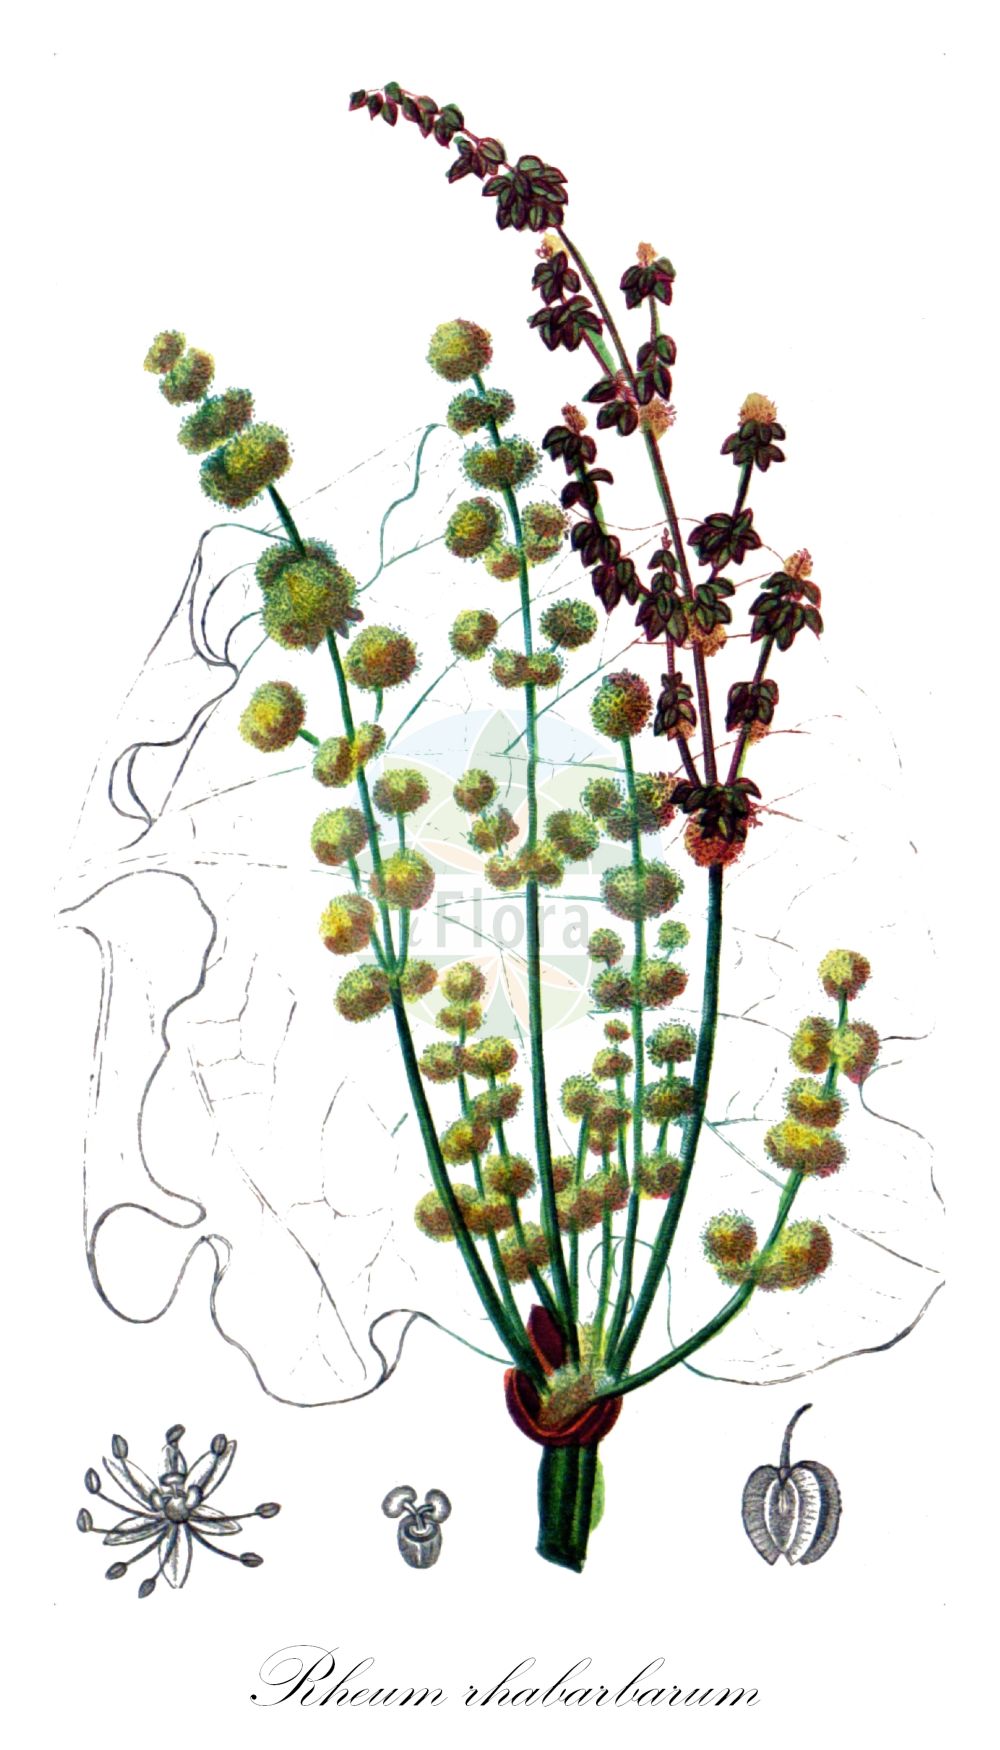 Historische Abbildung von Rheum rhabarbarum (Gewöhnlicher Rhabarber - Rhubarb). Das Bild zeigt Blatt, Bluete, Frucht und Same. ---- Historical Drawing of Rheum rhabarbarum (Gewöhnlicher Rhabarber - Rhubarb). The image is showing leaf, flower, fruit and seed.(Rheum rhabarbarum,Gewöhnlicher Rhabarber,Rhubarb,Rheum rhabarbarum,Rheum x hybridum J. A. Murray,Gewoehnlicher Rhabarber,Speise-Rhabarber,Wellblatt-Rhabarber,Rhubarb,Garden Rhubarb,Pieplant,Vegetable Rhubarb,Rheum,Rhabarber,Rhubarb,Polygonaceae,Knöterichgewächse,Knotgrass family,Blatt,Bluete,Frucht,Same,leaf,flower,fruit,seed,Chaumeton (1814f))